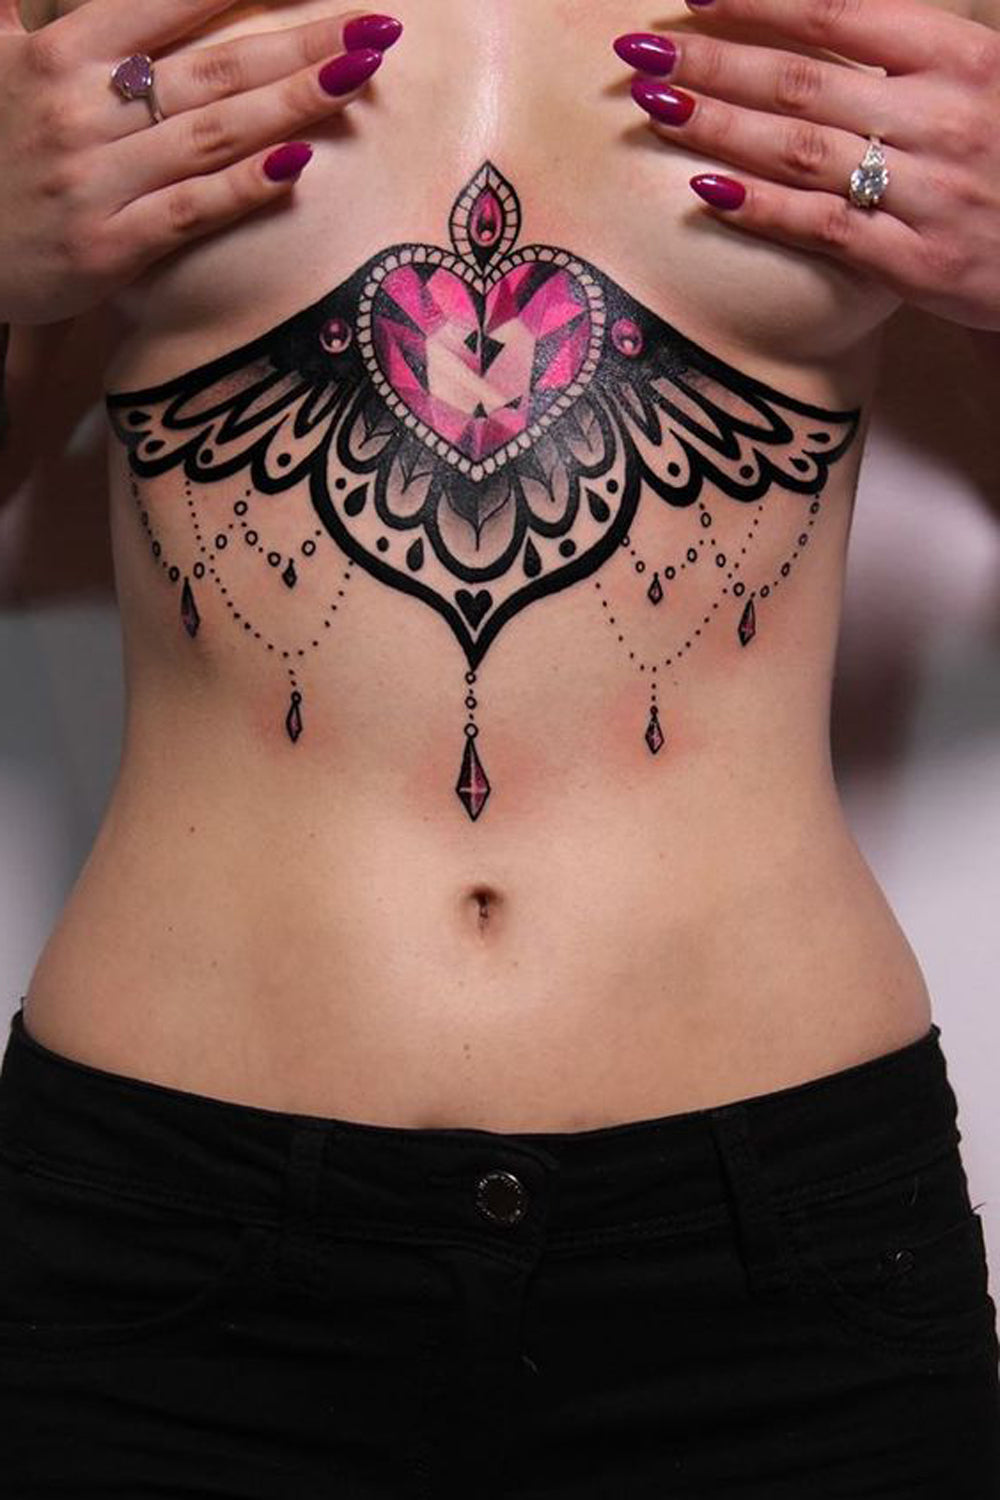 Lace Chandelier Sternum Tattoo Crystal Heart Underboob Tat -  Tatuaje del corazón del tatuaje del esternón del tatuaje de la lámpara del cordón del cordón - www.MyBodiArt.com